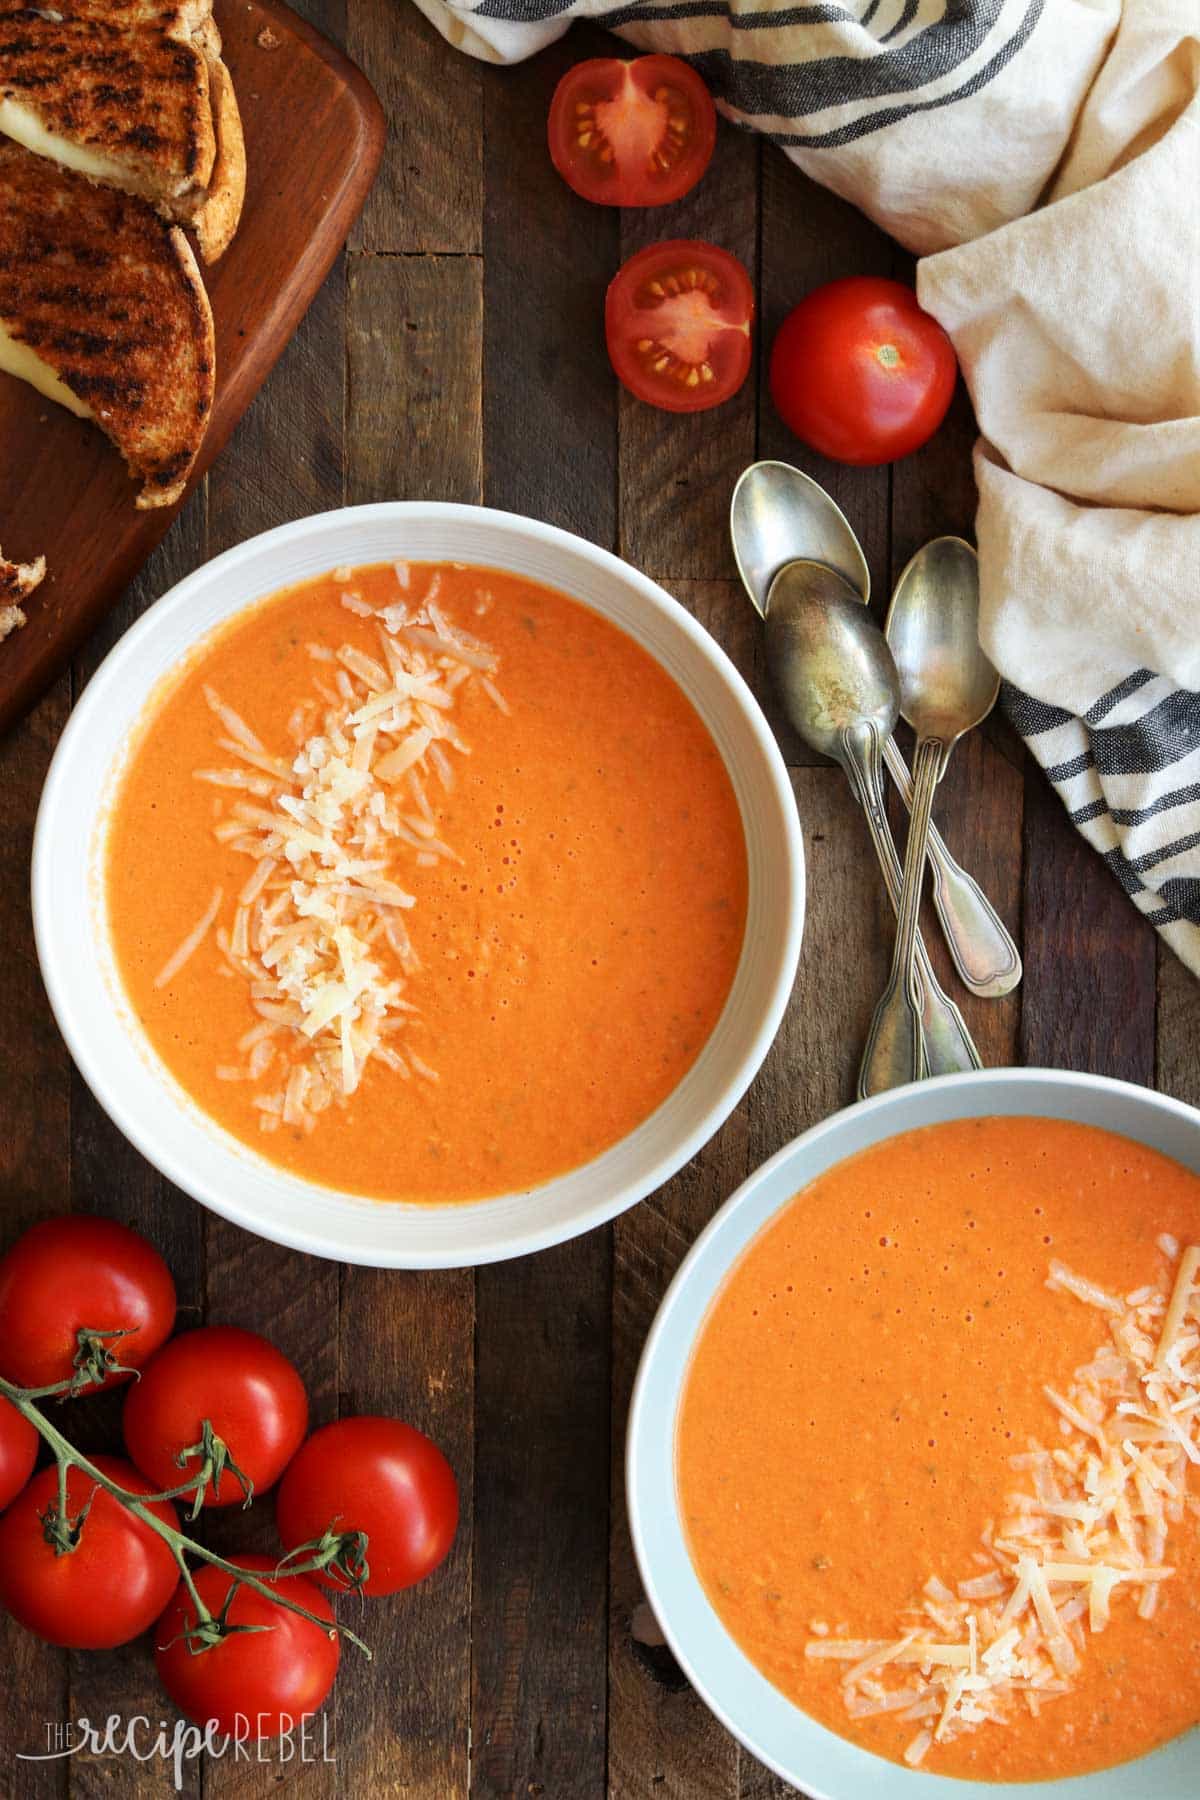 20+ of the Best Gluten Free Soup Recipes perfect for the fall and winter months! Tulet rakastamaan, kuinka helppoa tämä tekee aterioiden suunnittelusta! #mealprep #slowcooker